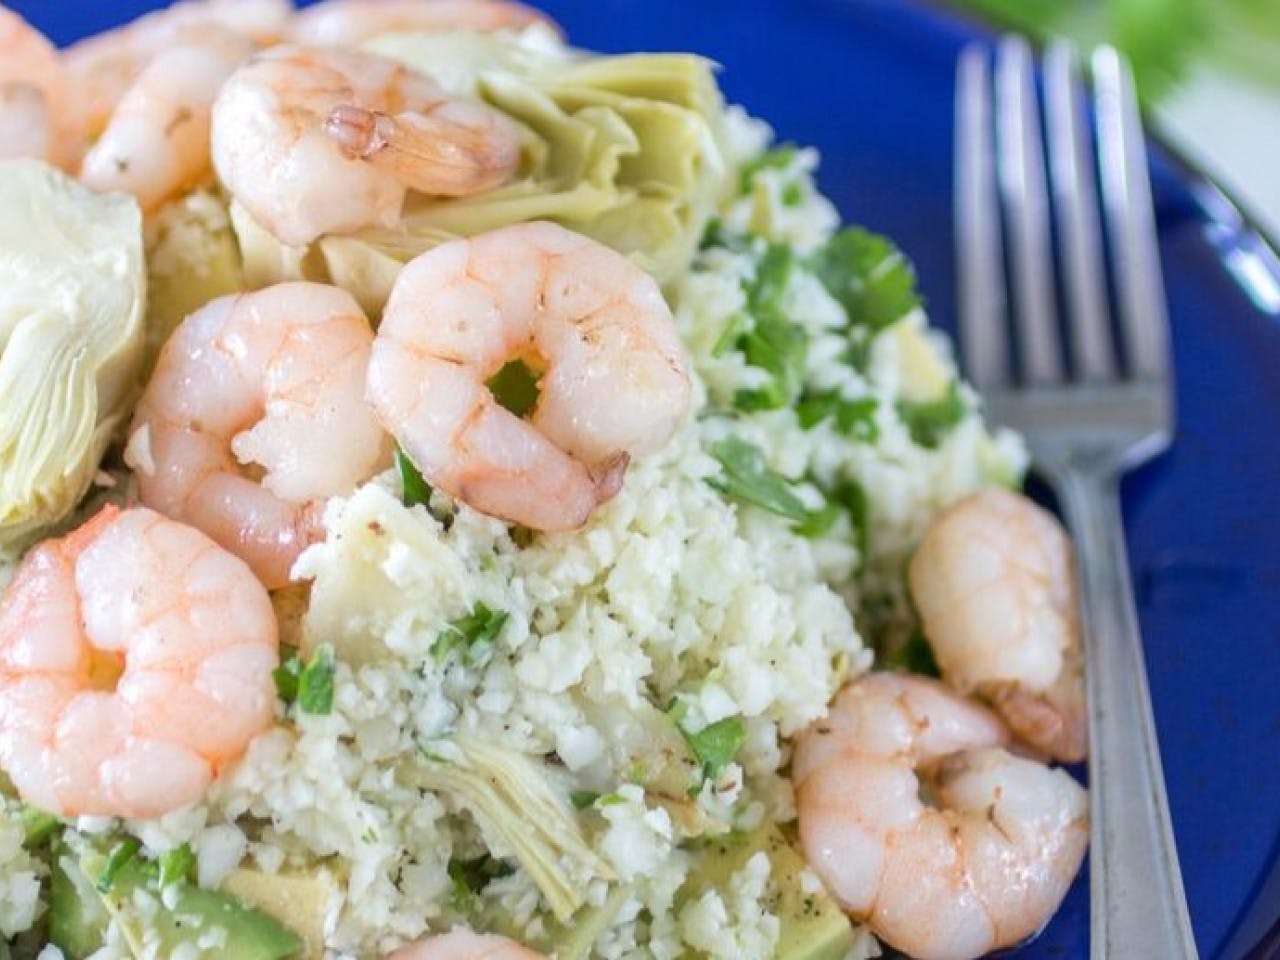 Couscous salad with shrimps